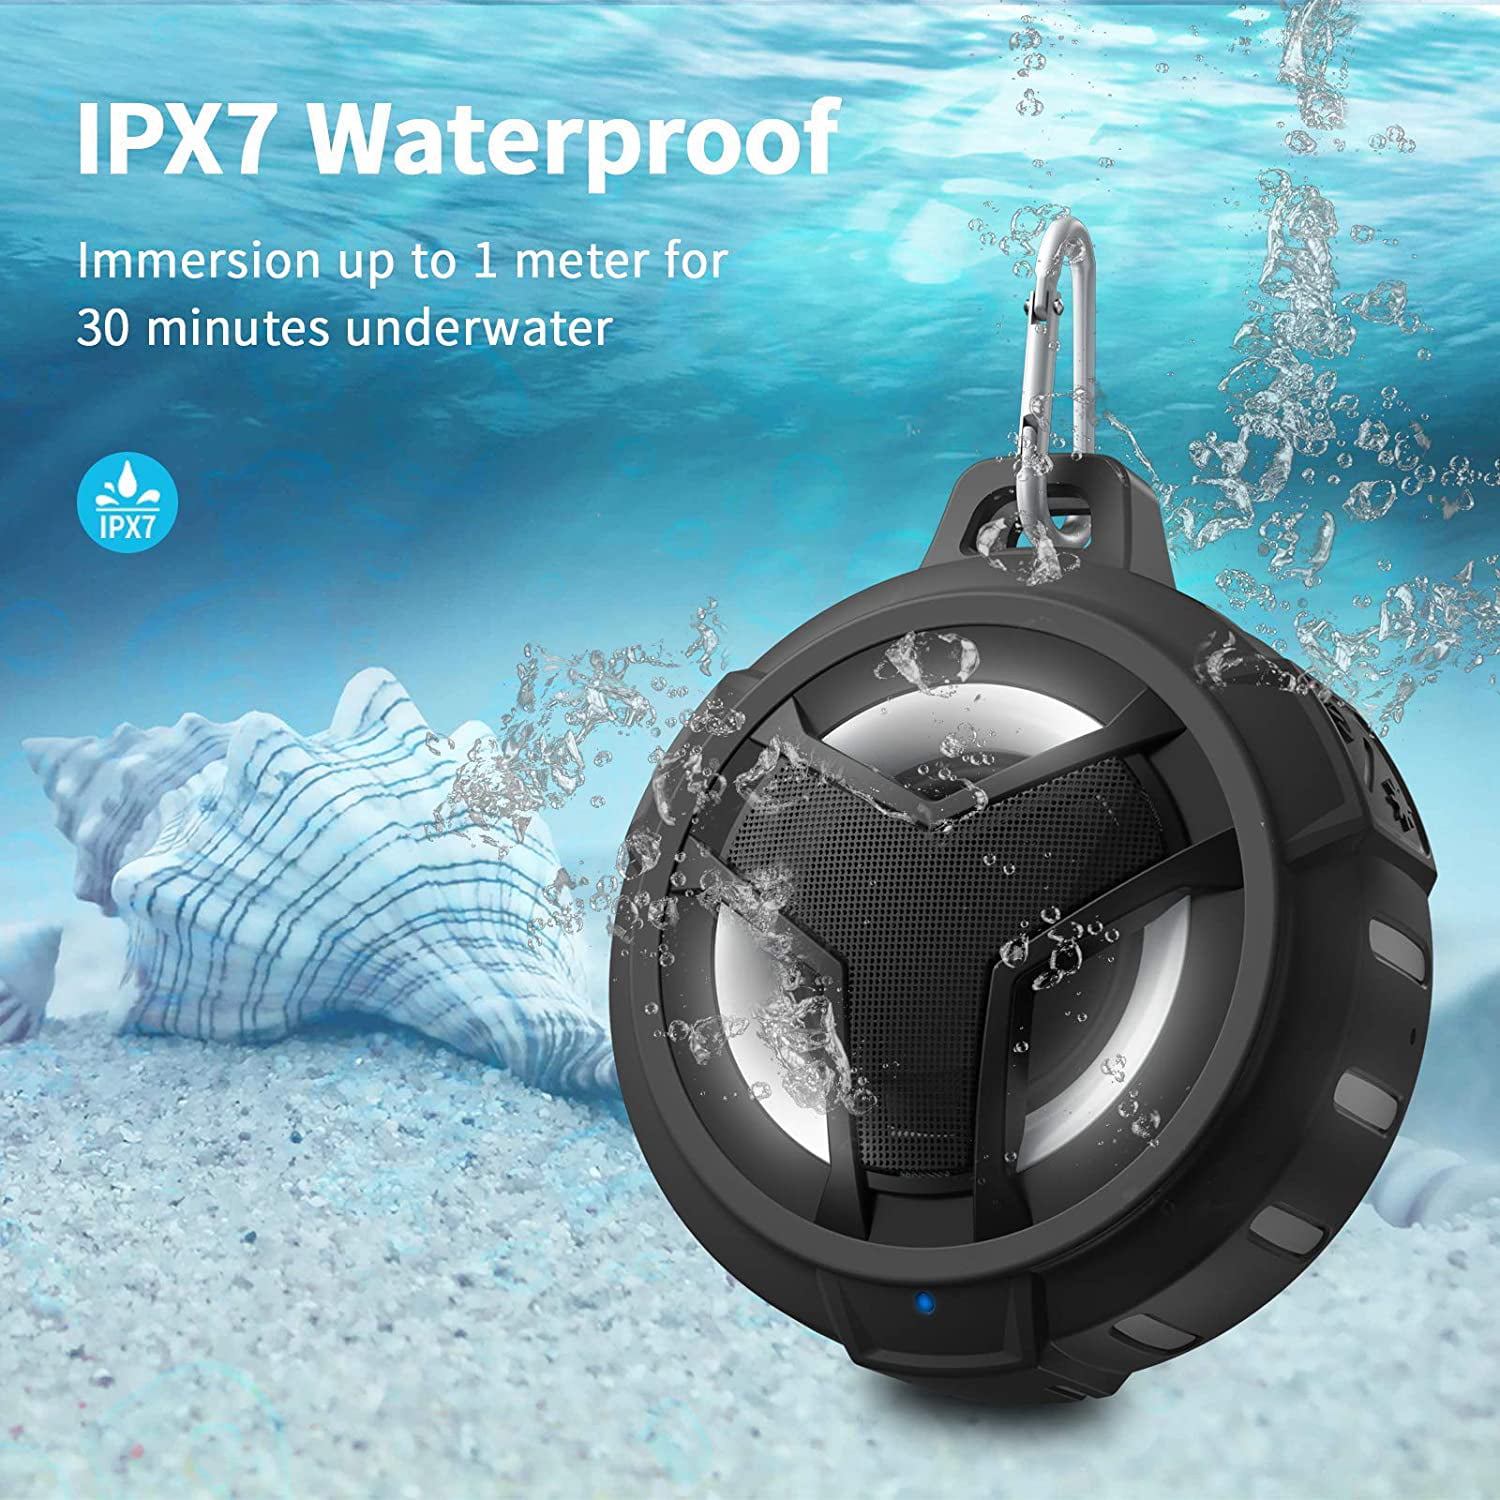 IP67 Waterproof Outdoor Speaker Wireless with LED Light Beach Pool Bike -Black TWS Waterproof Portable Bluetooth Speakers Floating Hands-Free for Shower EBODA Bluetooth Shower Speaker 2000mAh